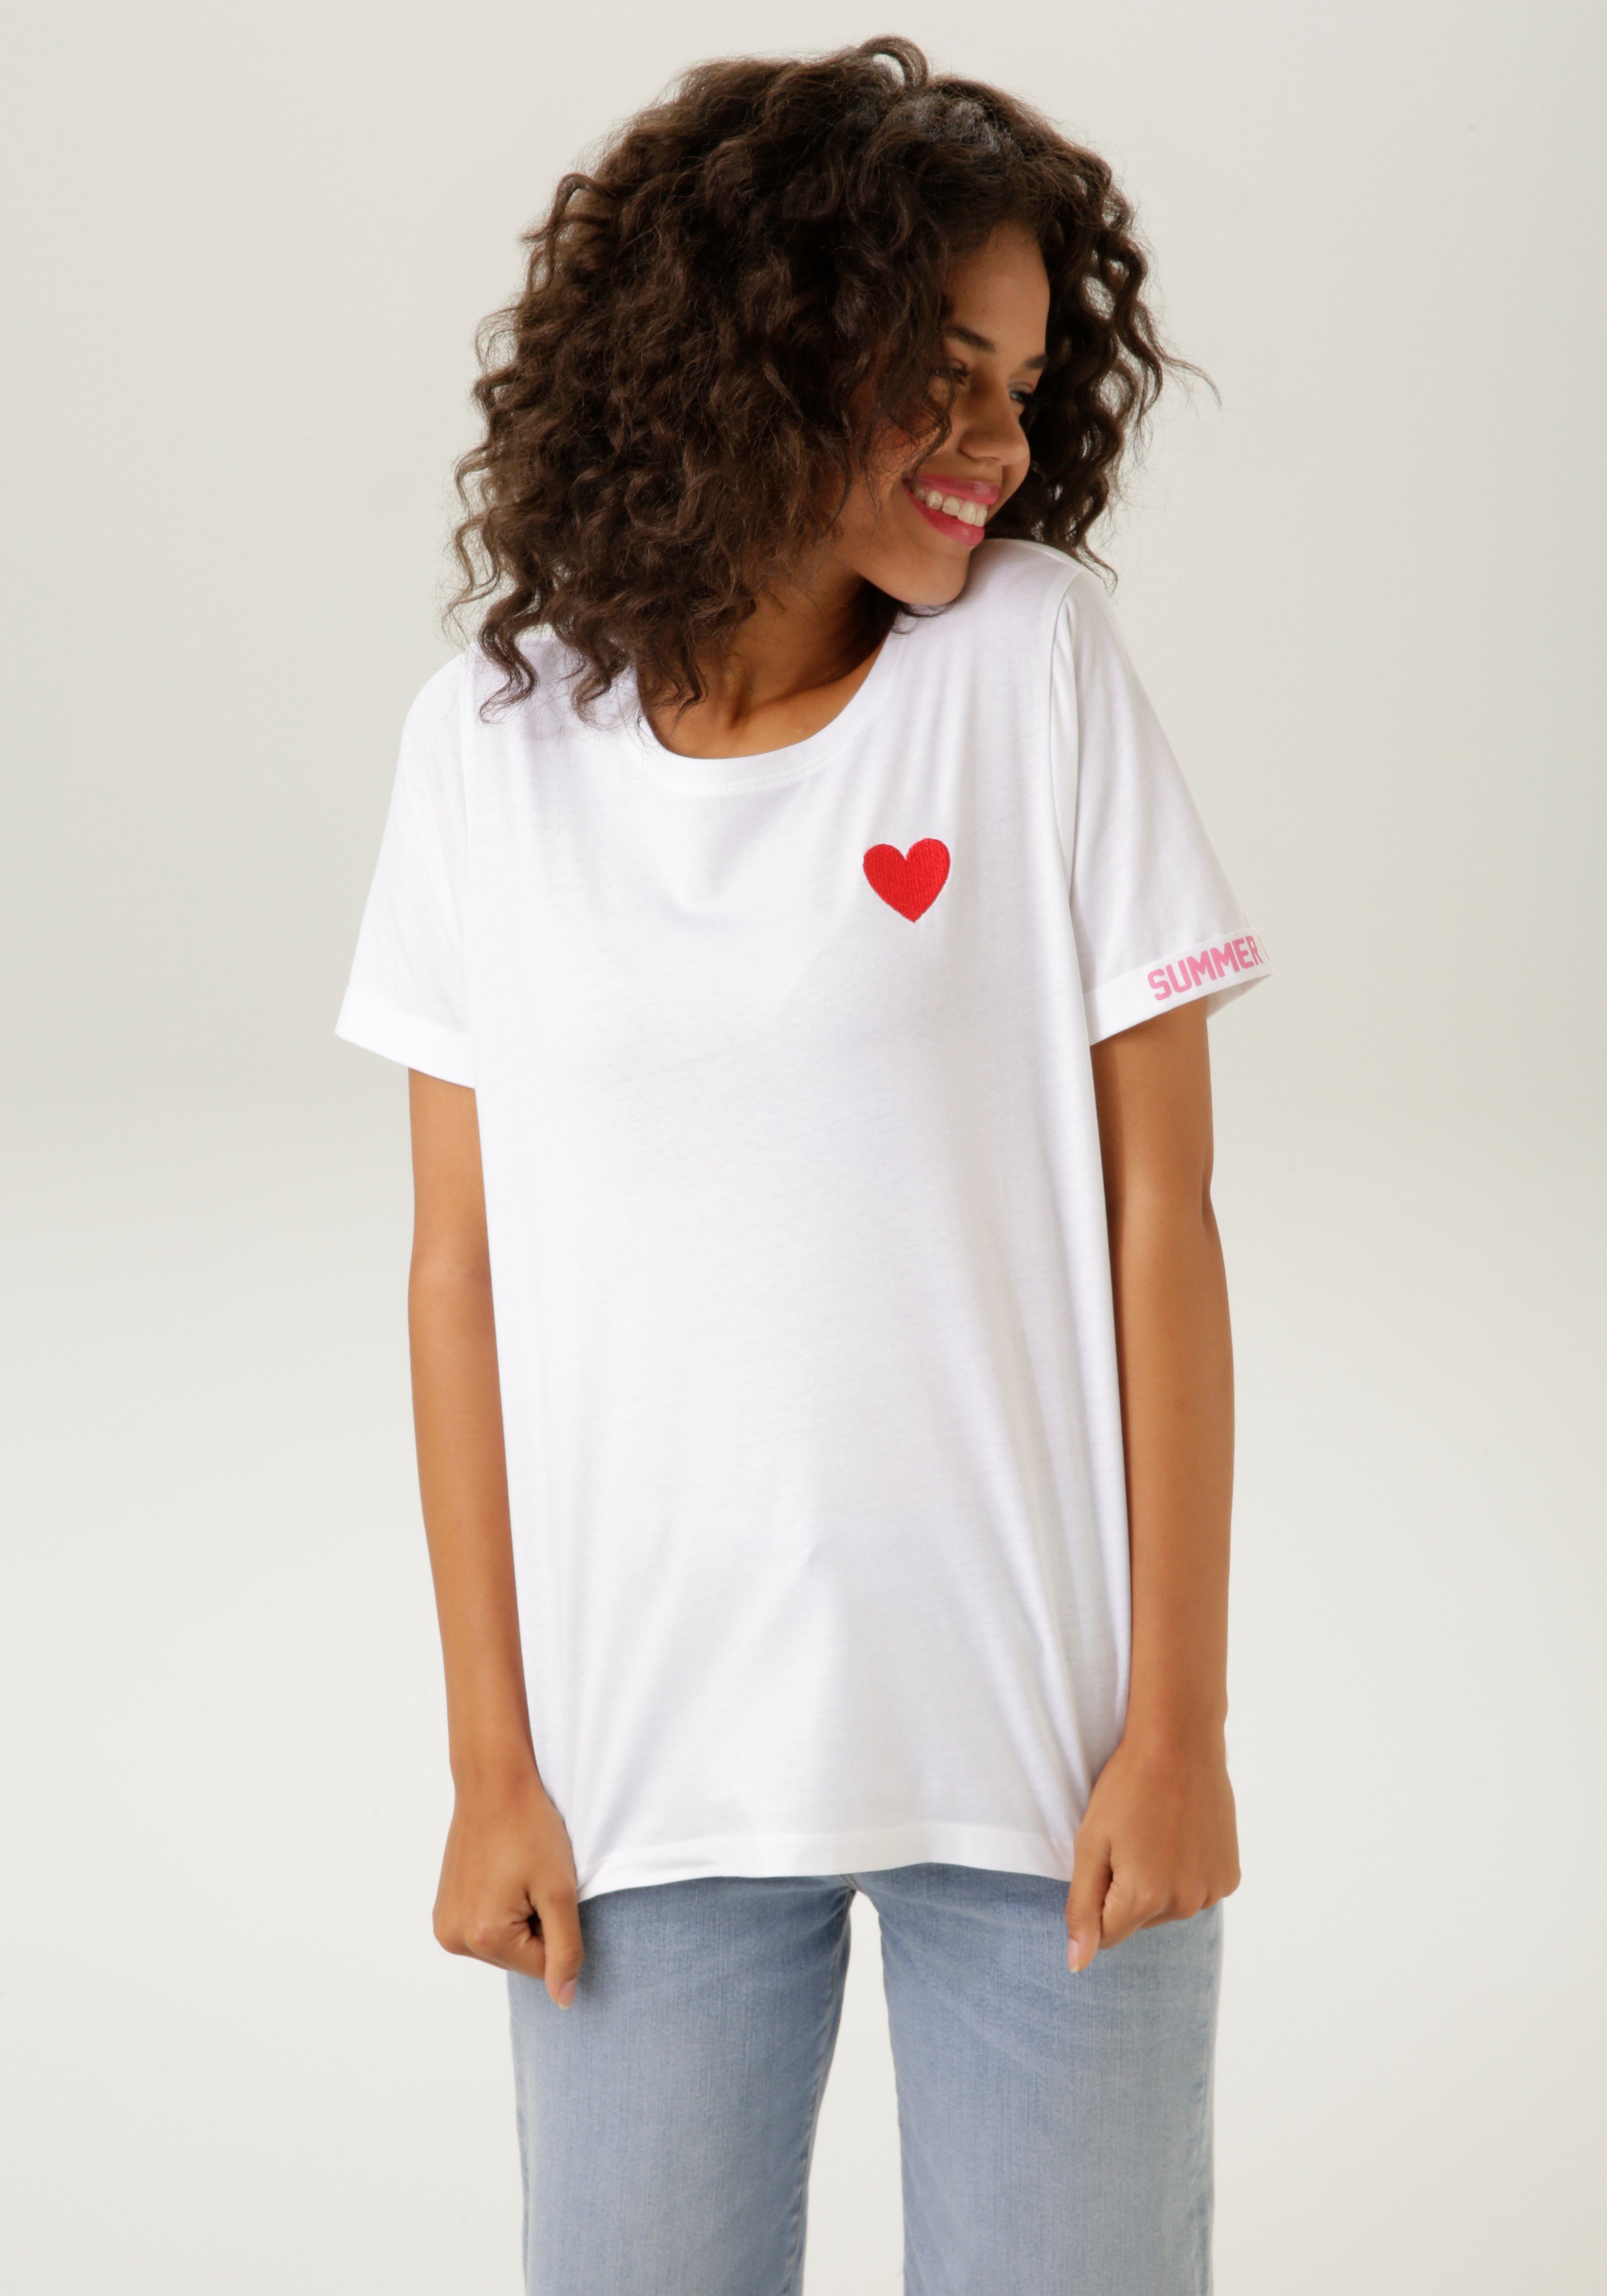 bedrucktem T-Shirt Rücken Aniston mit Herz-Applikation NEUE CASUAL KOLLEKTION - und